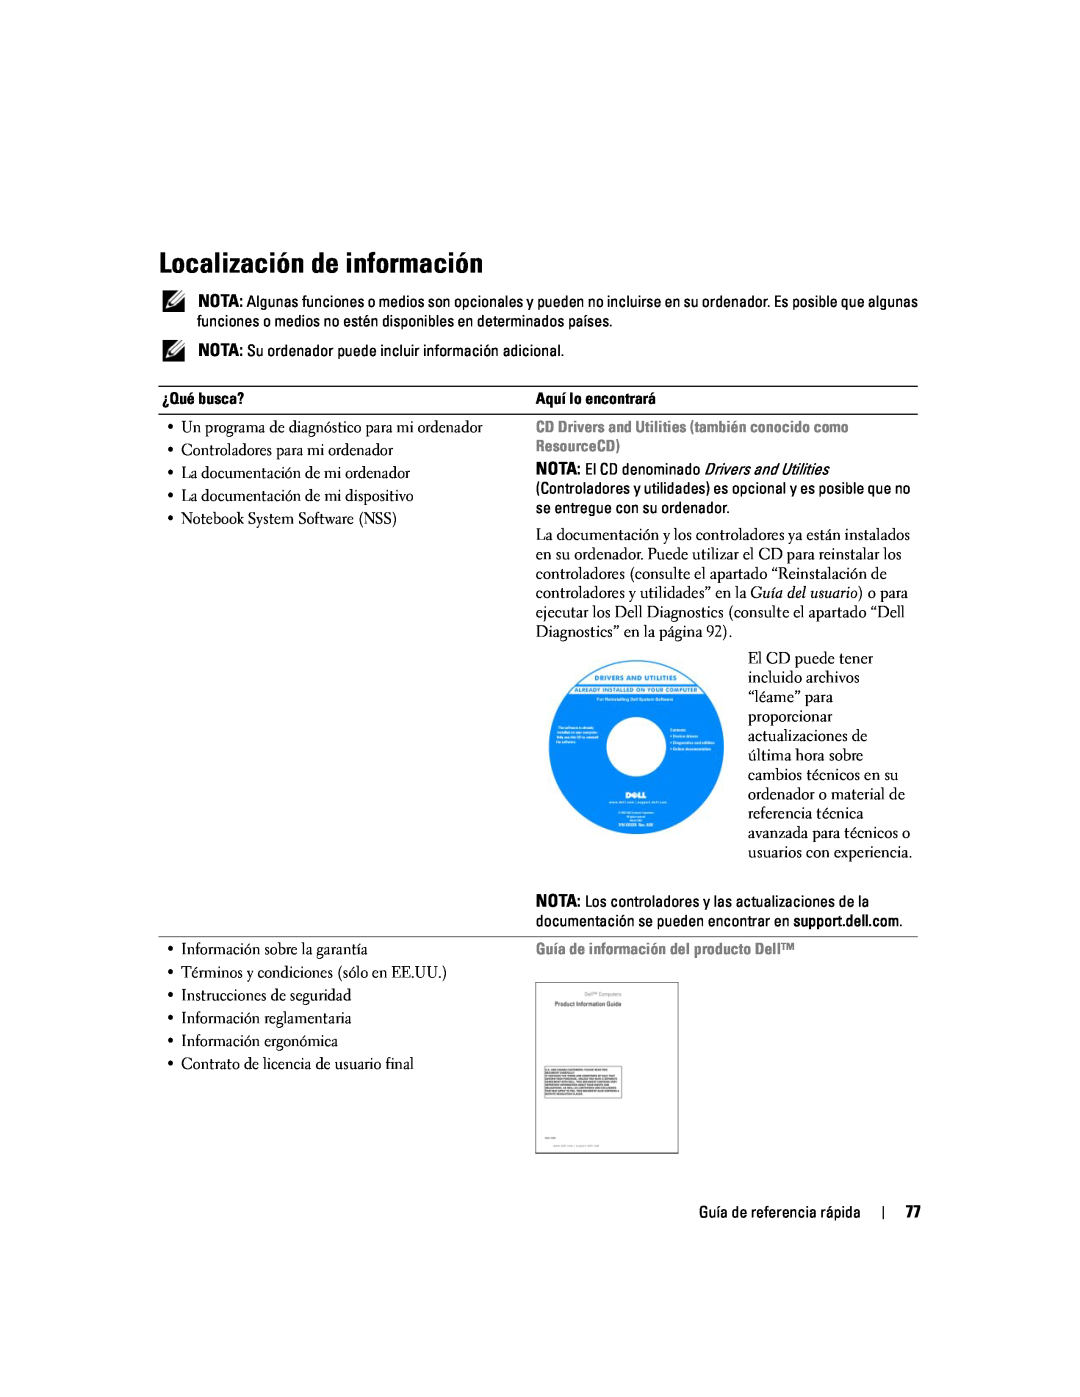 Dell D620 manual Localización de información, CD Drivers and Utilities también conocido como, ResourceCD 